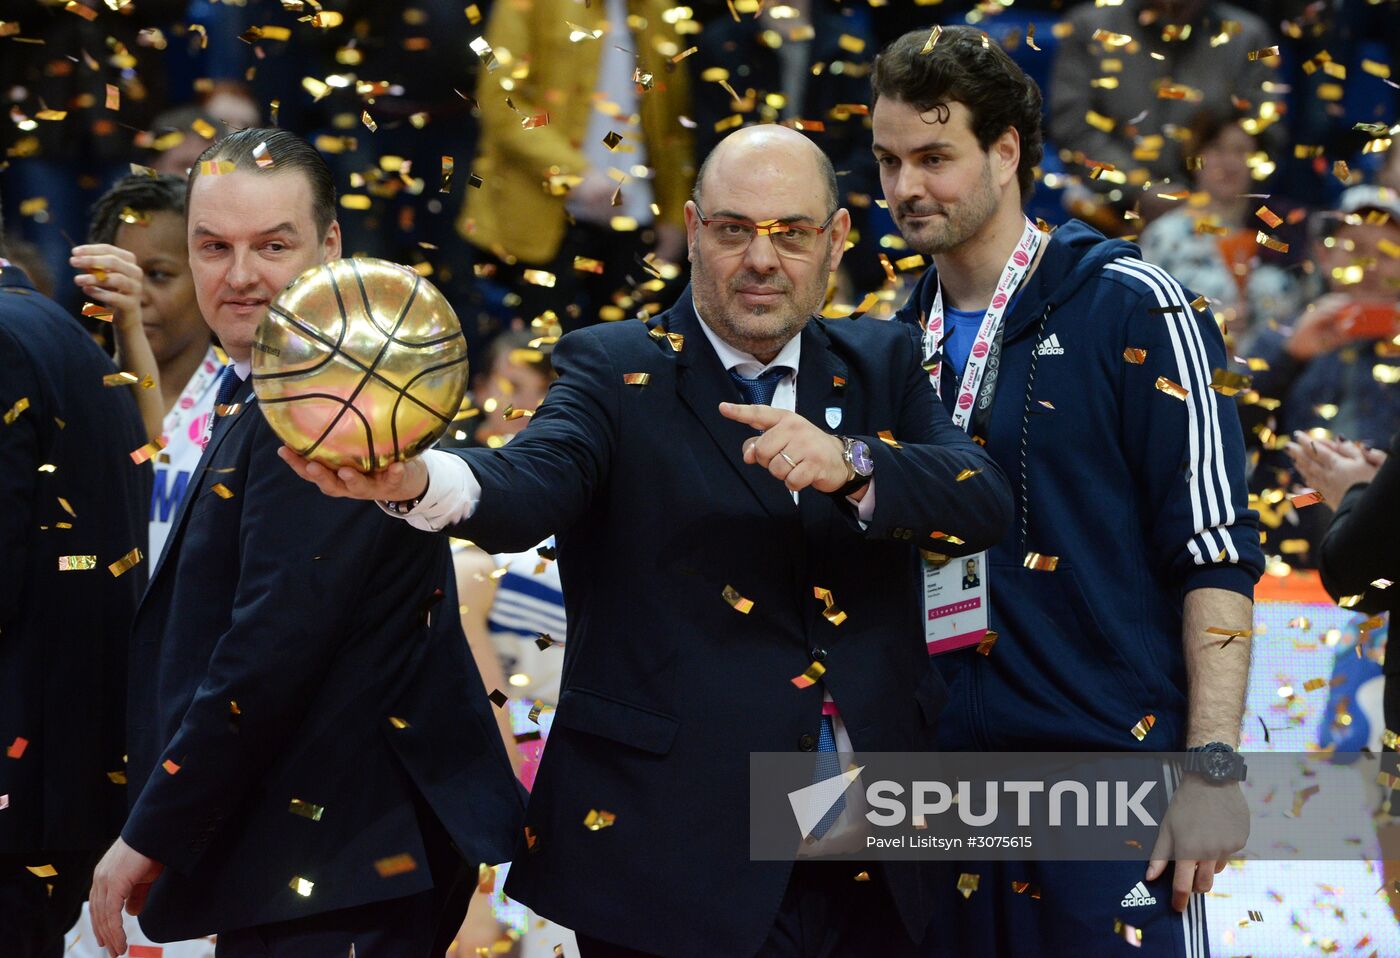 Women's Euroleague Basketball Final Four. Final match